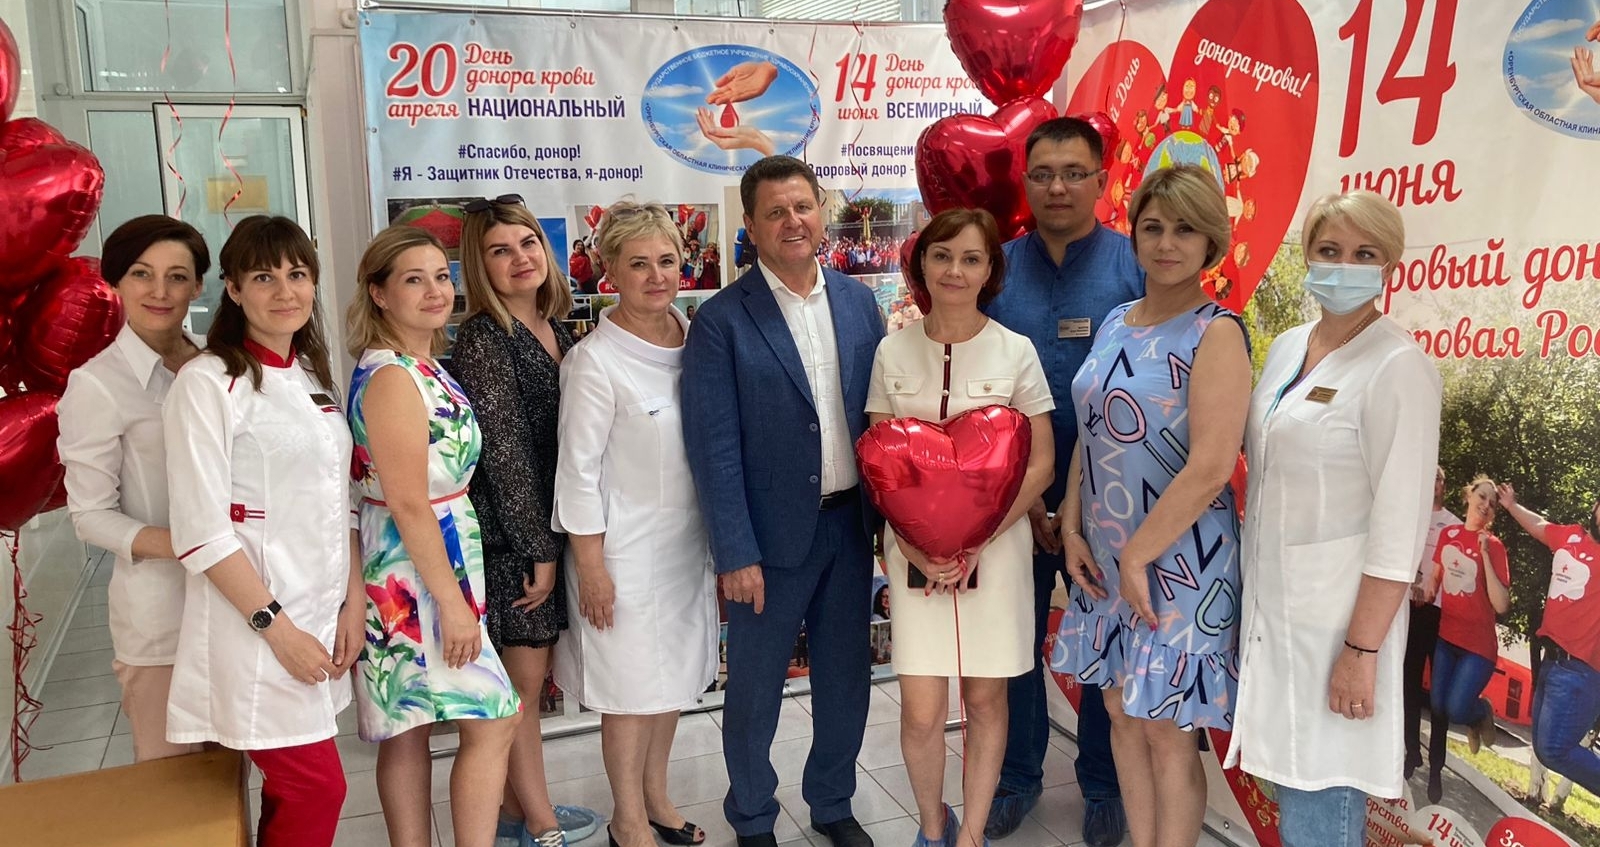 15 июня Оренбургскую службу крови посетили сотрудники станции переливания крови г.Уфа 